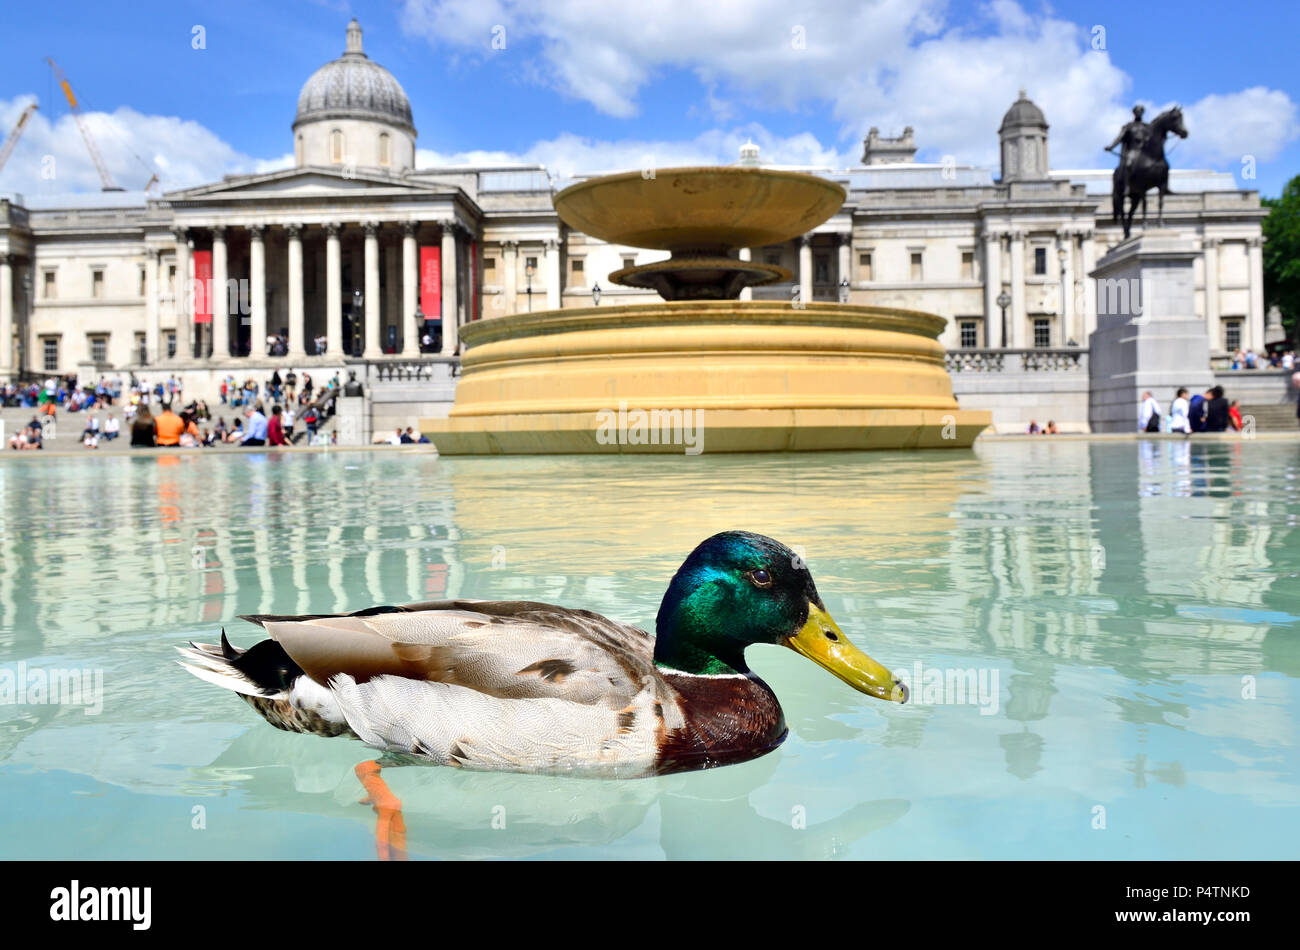 Les canards colverts (Anas platyrhynchos) dans l'une des fontaines à Trafalgar Square, Londres, Angleterre, Royaume-Uni. Banque D'Images